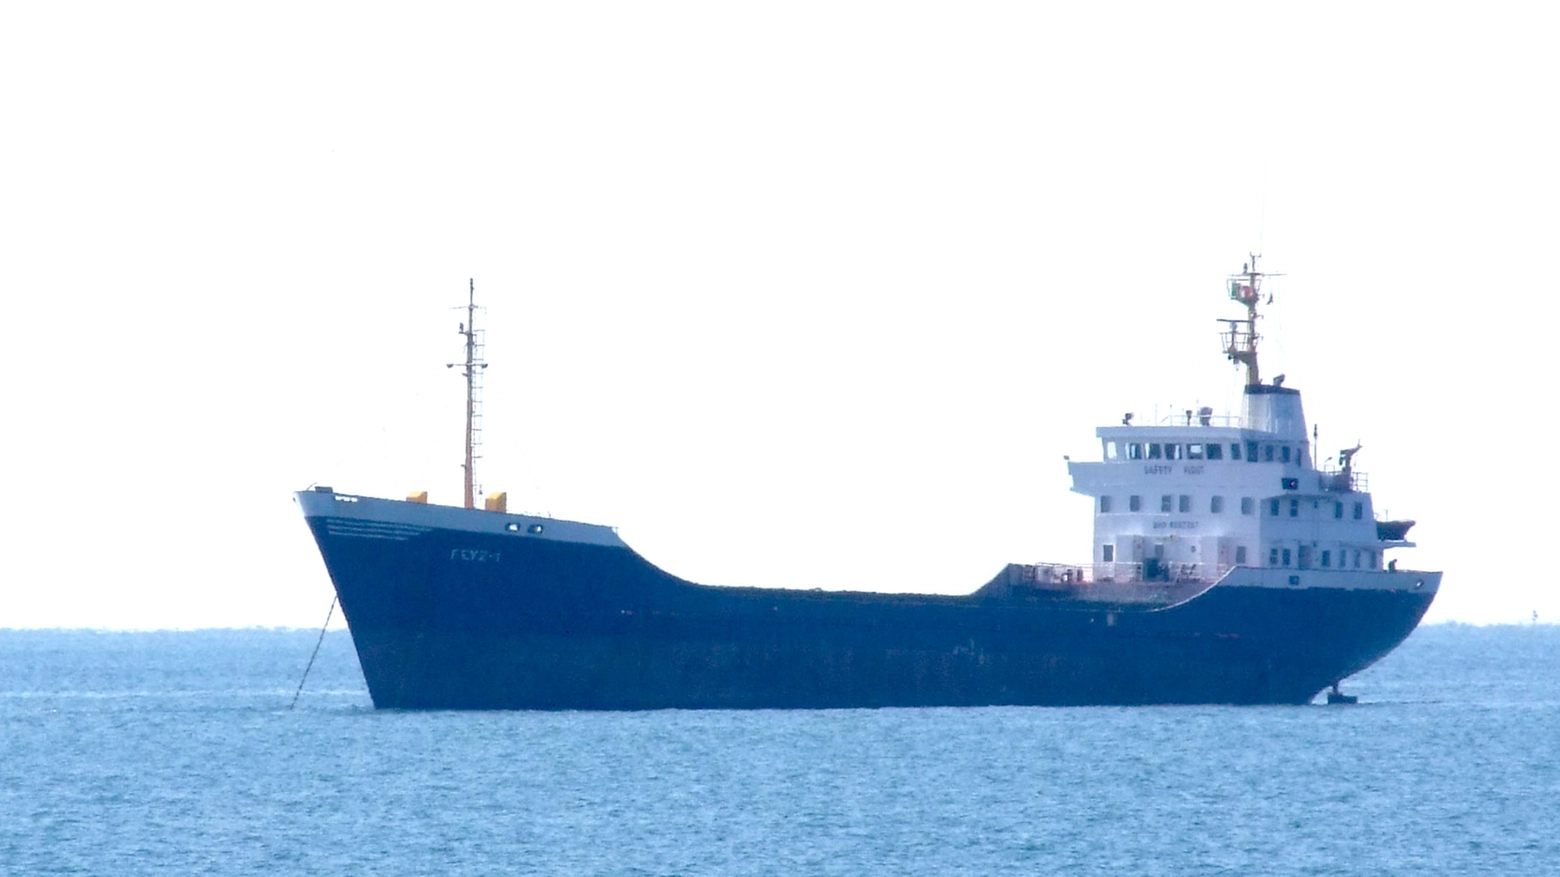 La nave Feyz vista in lontananza (foto Delia)